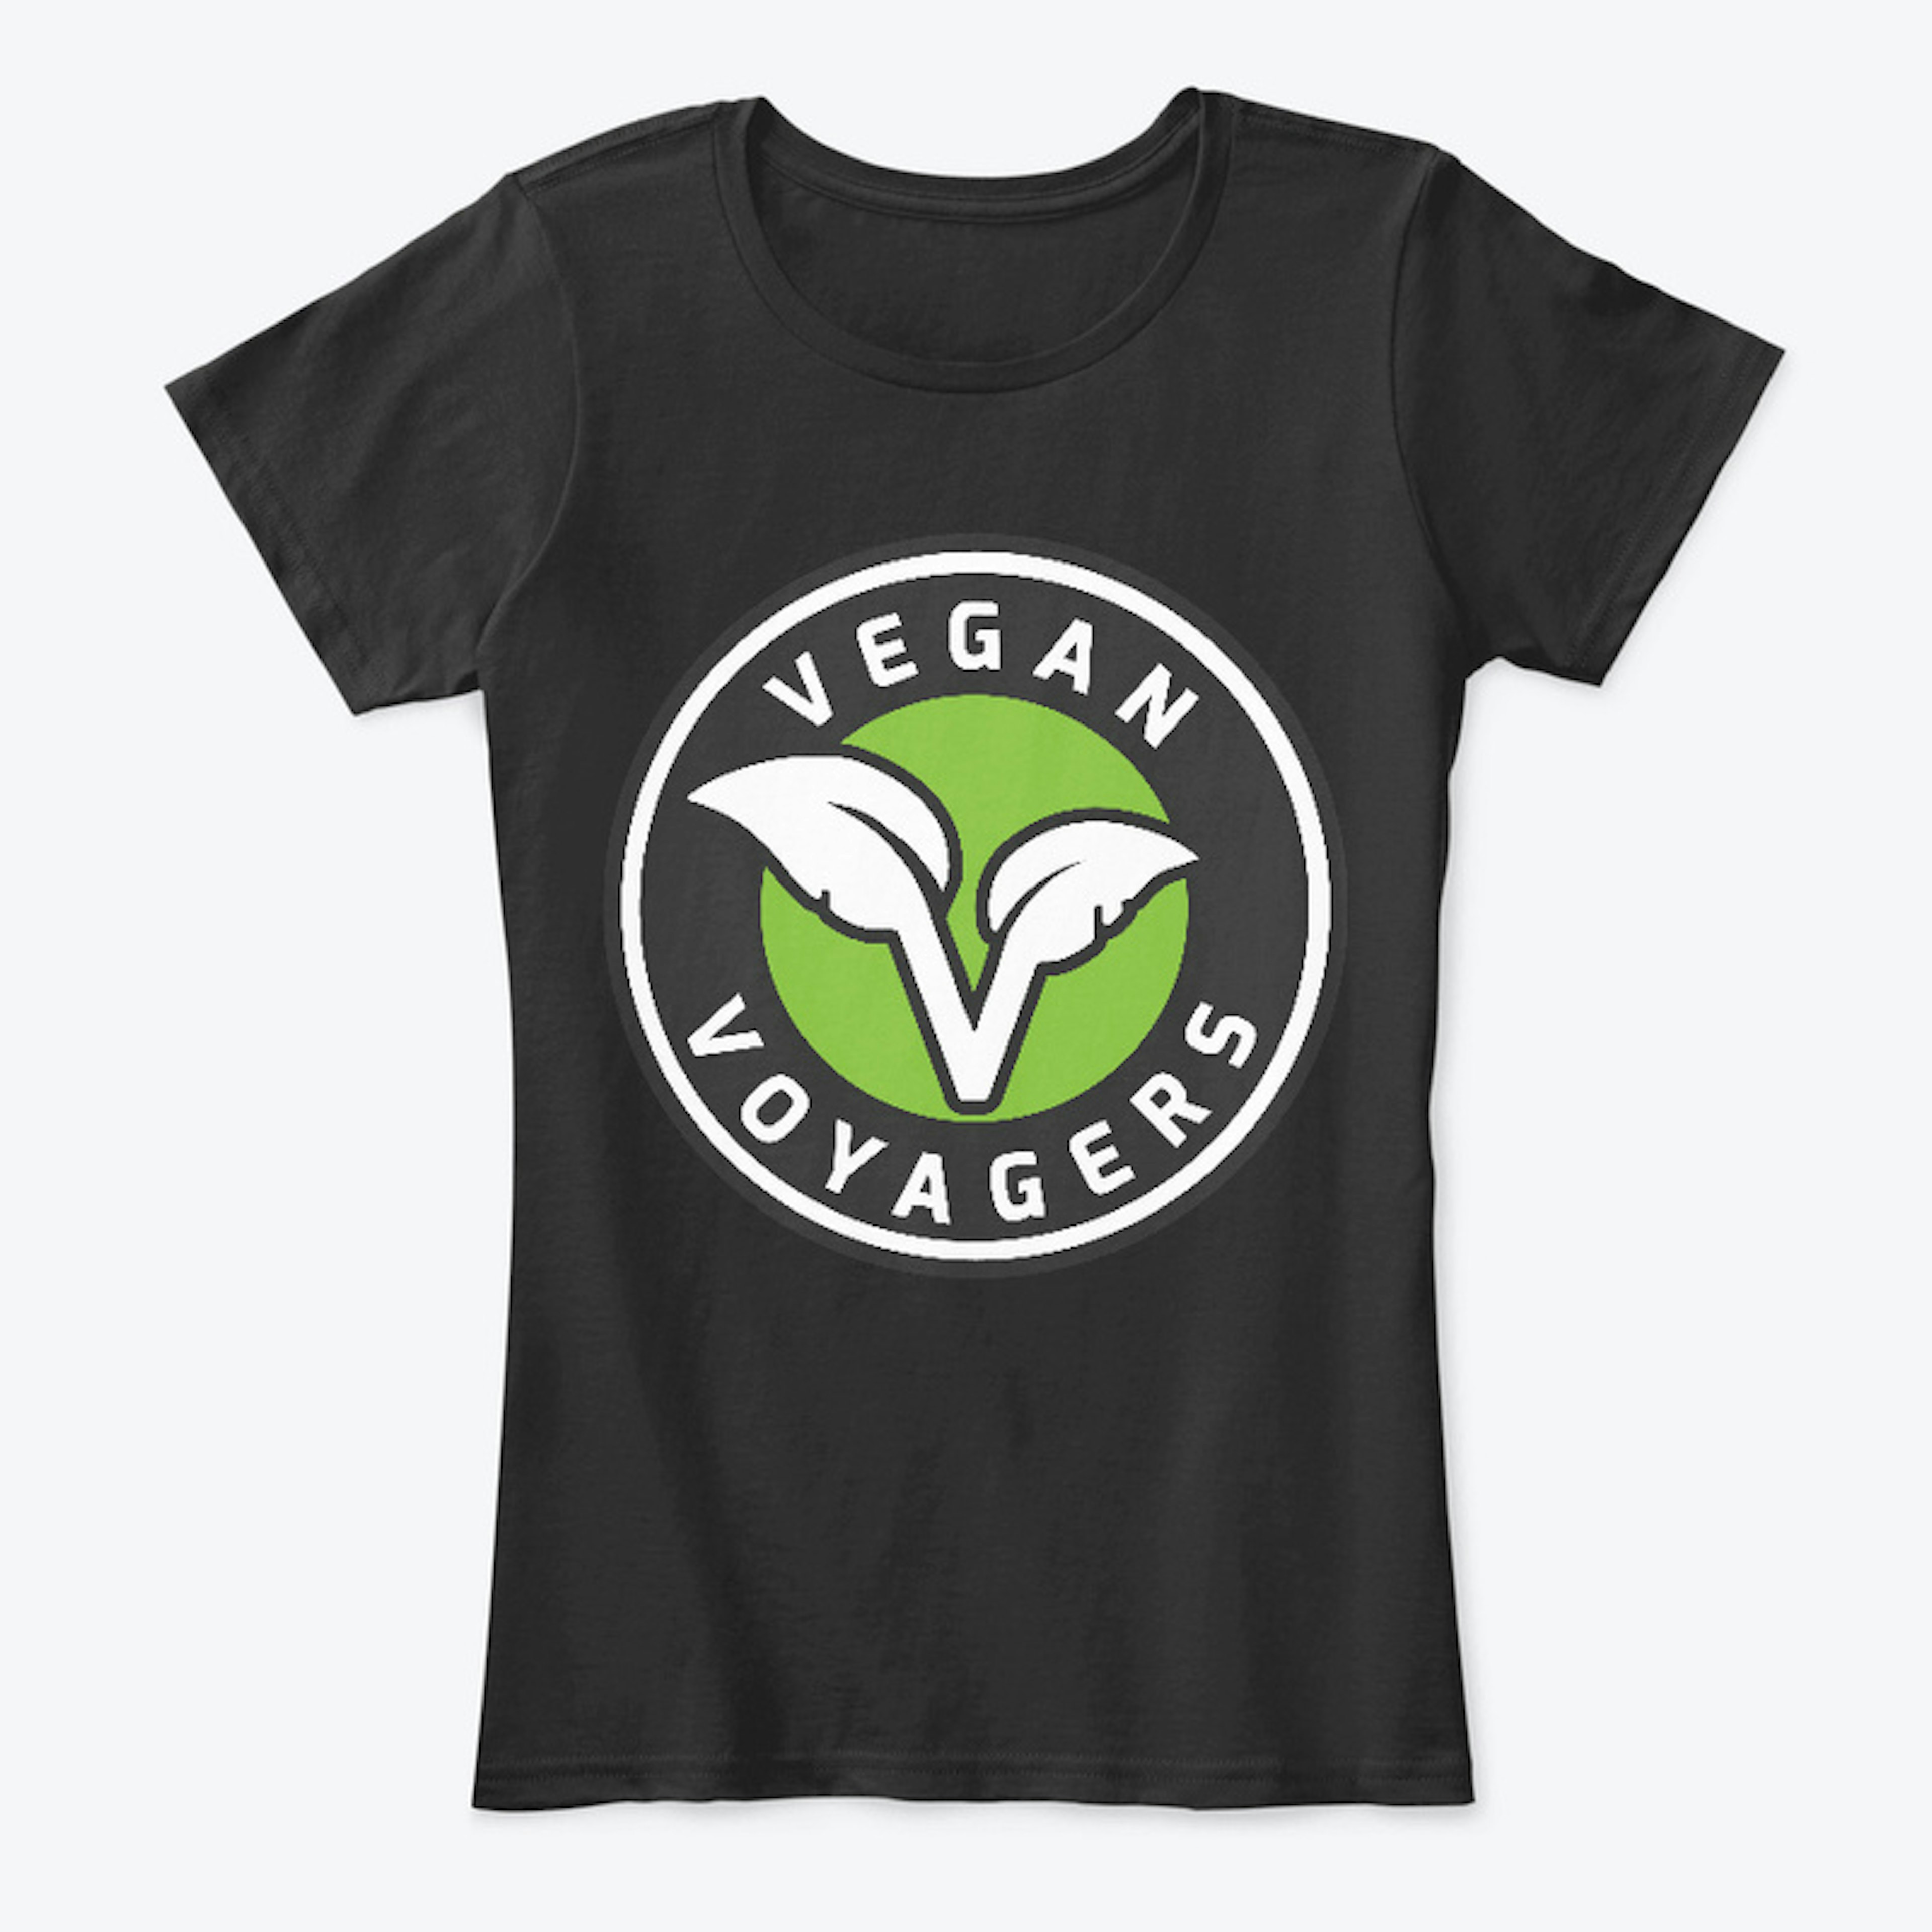 Vegan Voyagers Large Logo Women's Tee